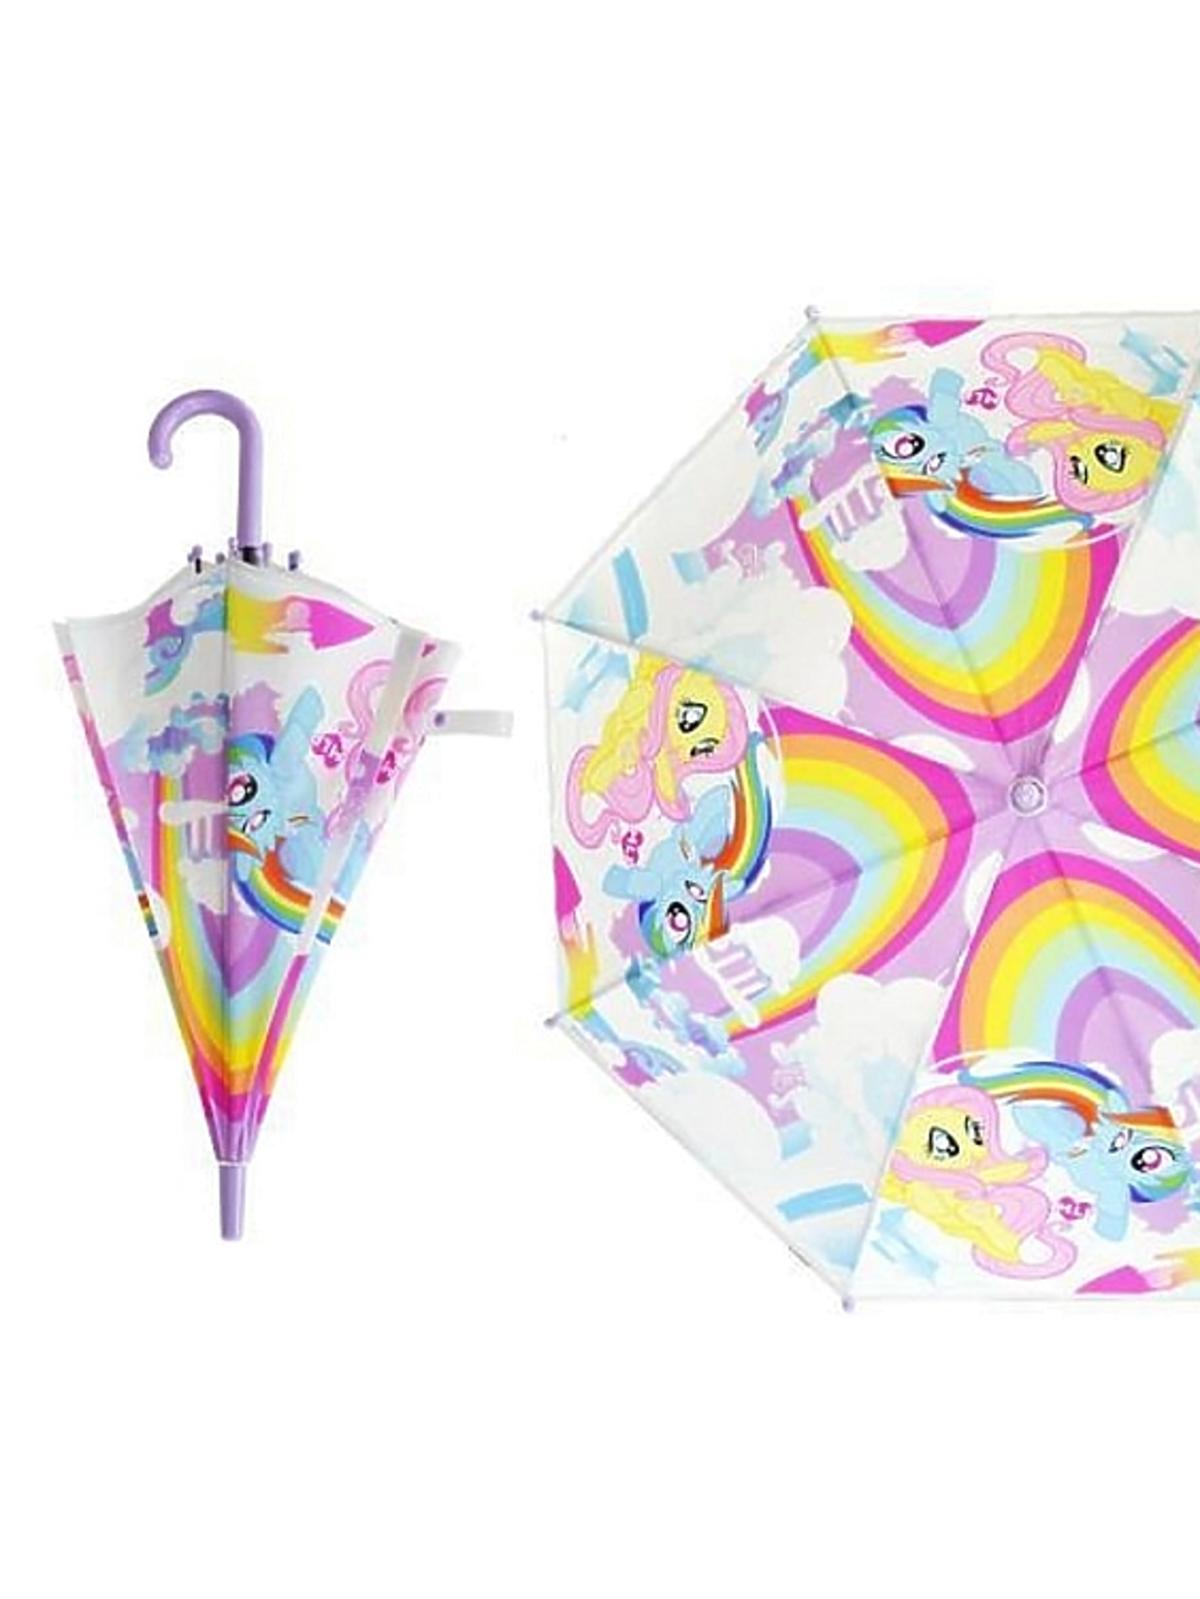 parasol dla dzieci z my little pony 16.99zł smyk.jpg